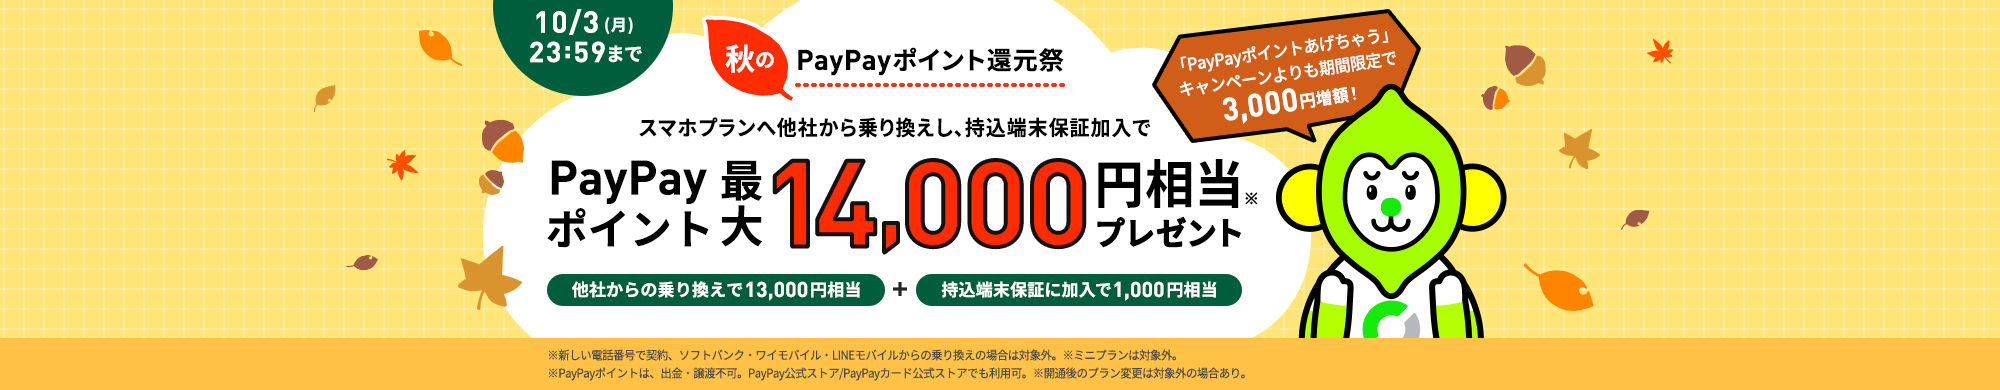 キャンペーン期間中にLINEMOの「スマホプラン」に他社からの乗り換えで契約すると、PayPayポイント13,000円相当をプレゼントします。「持込端末保証」に加入すると、さらにPayPayポイント1,000円相当を追加でプレゼントします。